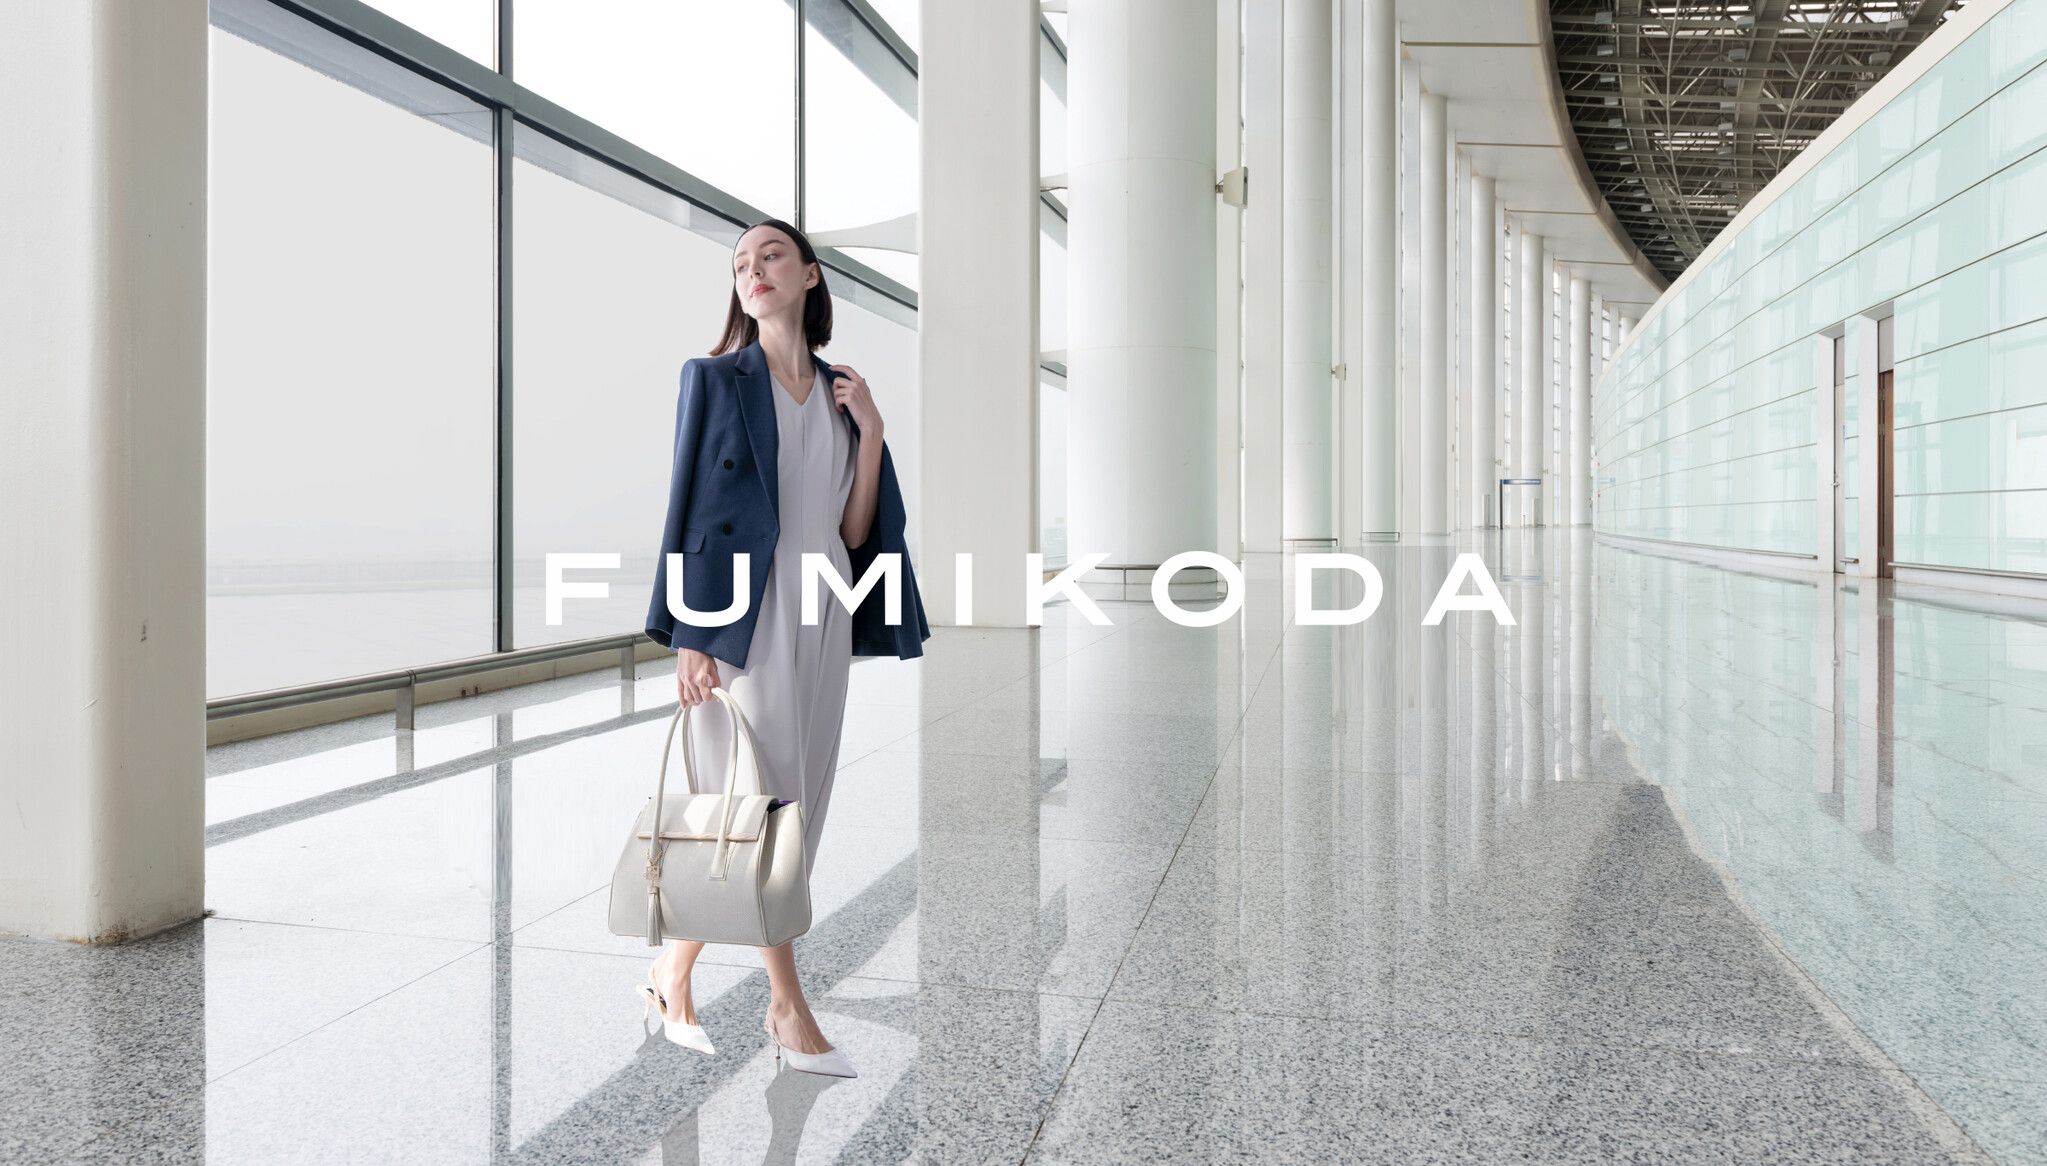 ビジネスバッグブランド「FUMIKODA」が羽田空港第1ターミナルにて